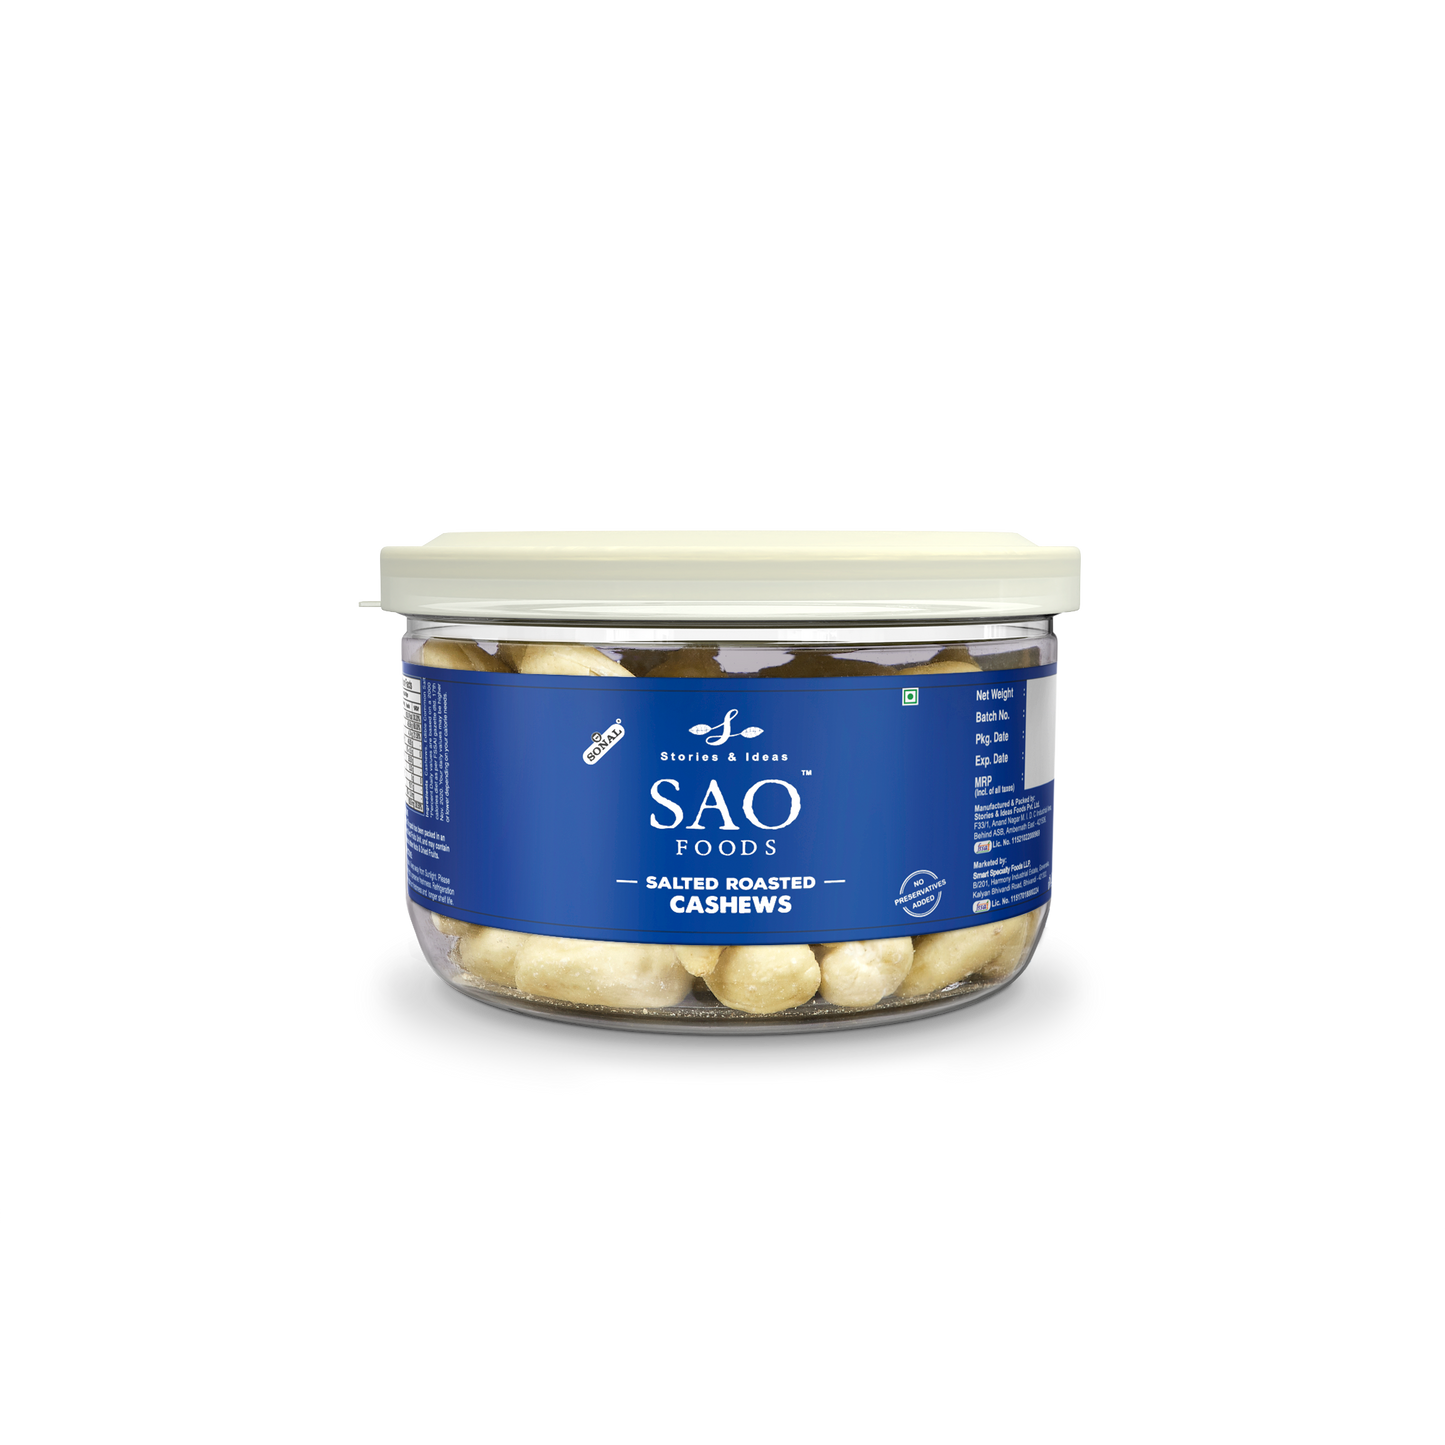 SAO Foods Salted Roasted Cashews 100 gm | Tin Cap PET Jar